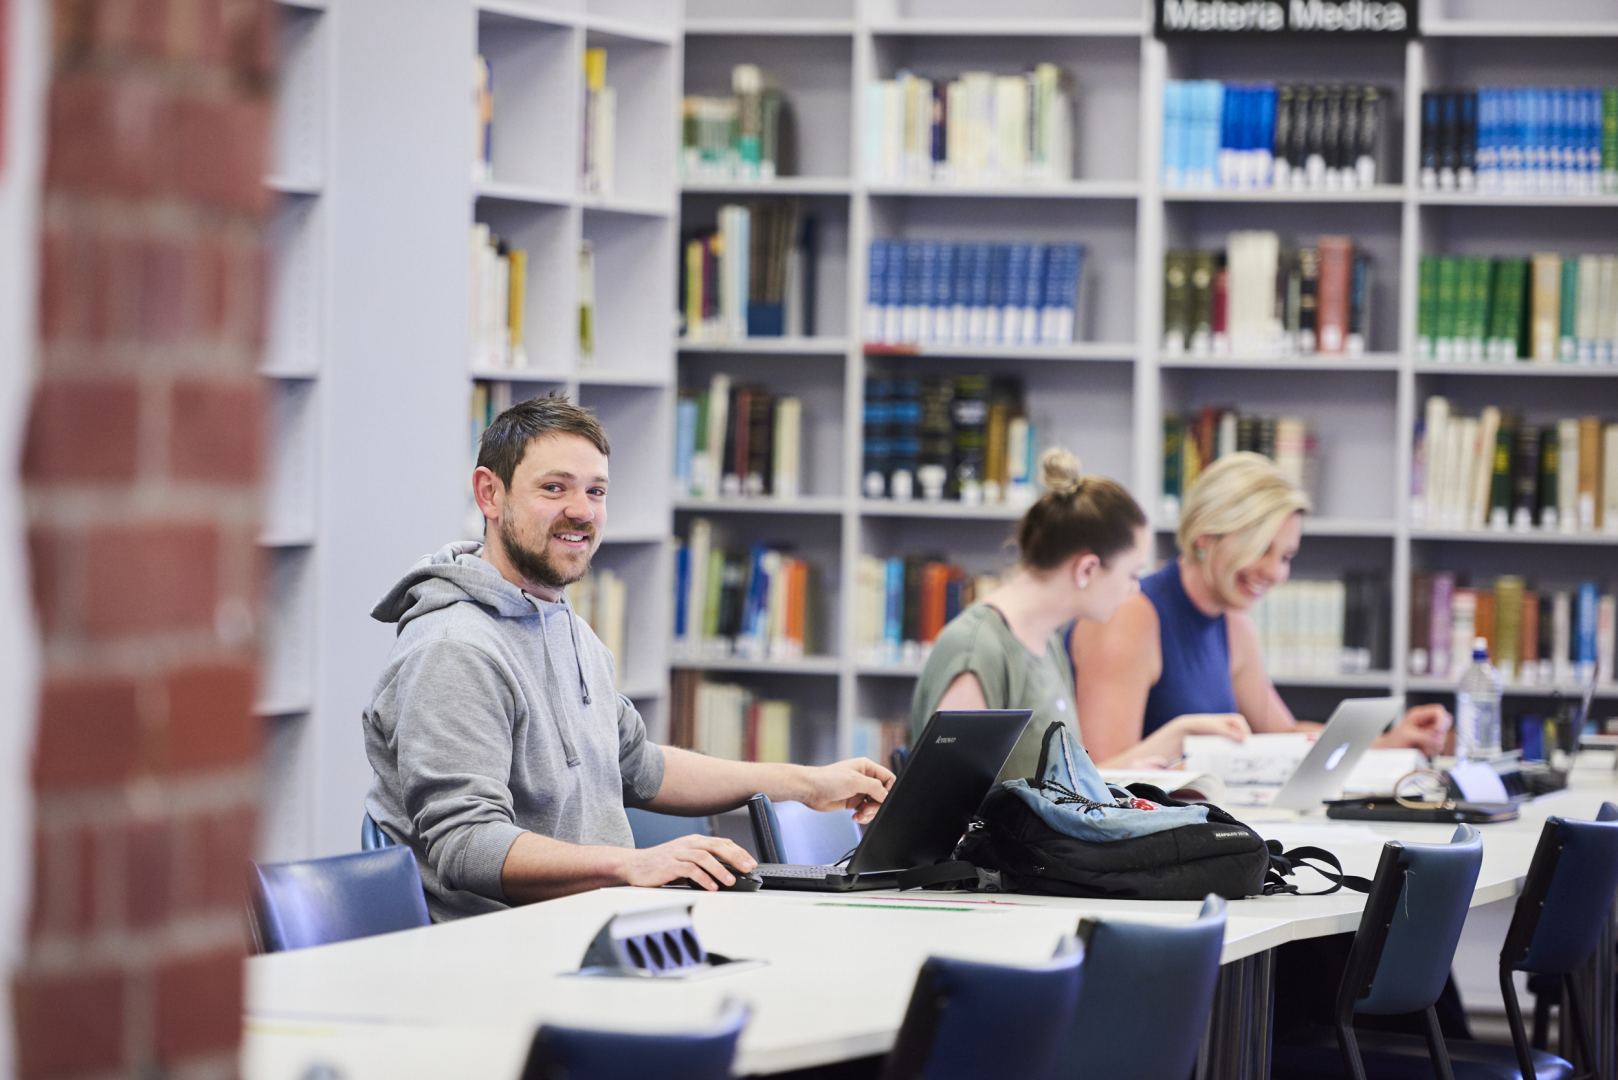 A-Level Education Group Avstraliyanın Top Universitetlərindən biri olan Torrens Universiteti ilə əməkdaşlığını elan edib (FOTO)